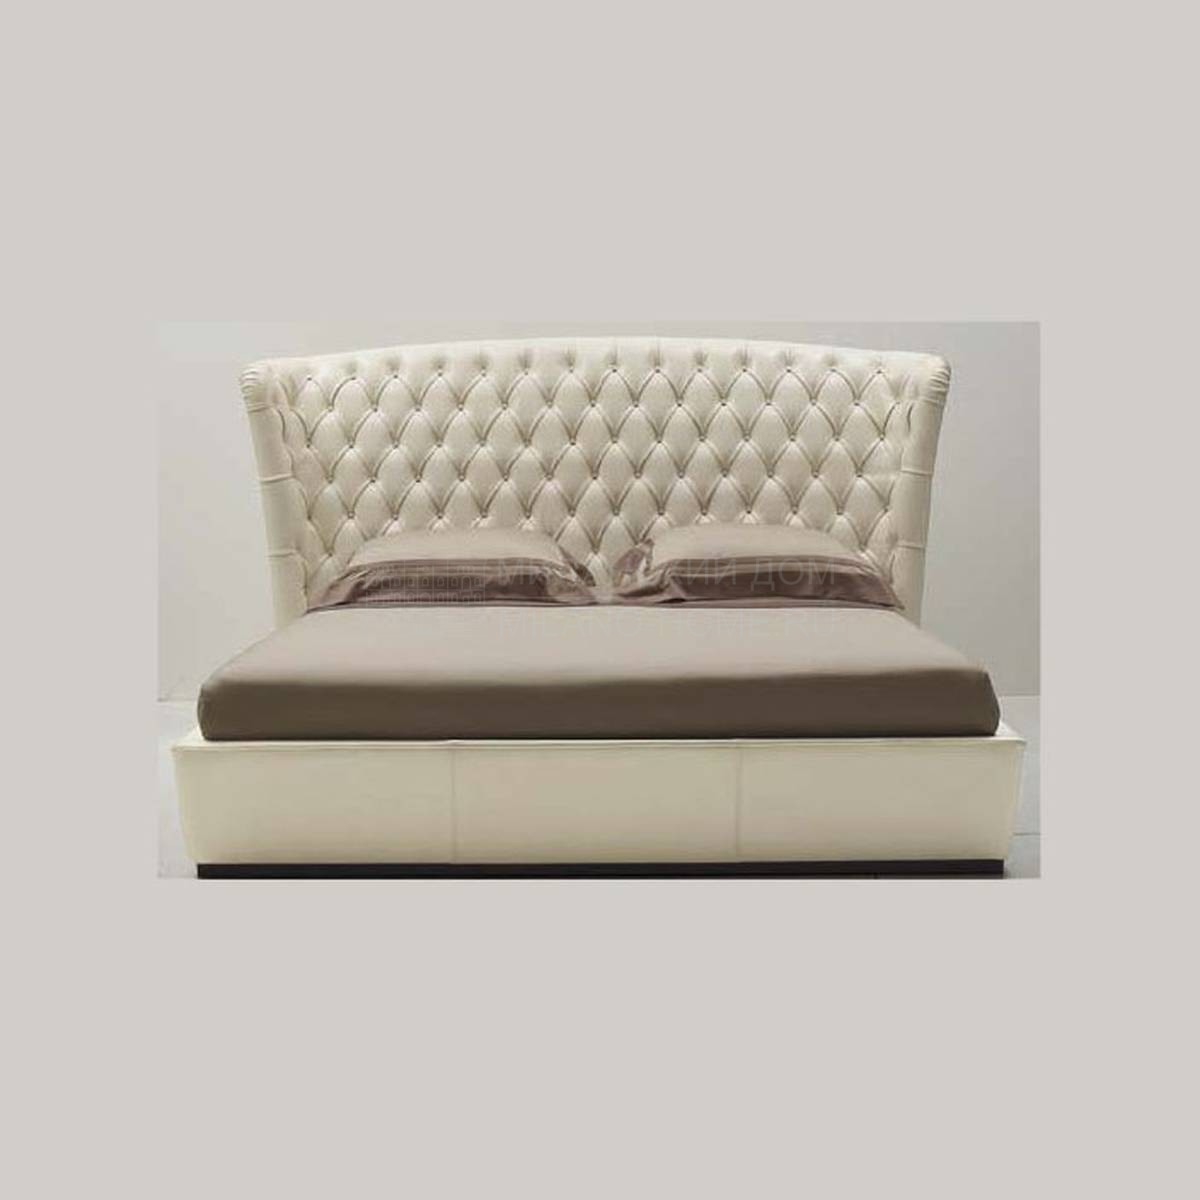 Кровать с мягким изголовьем New Moon Bed из Италии фабрики ULIVI